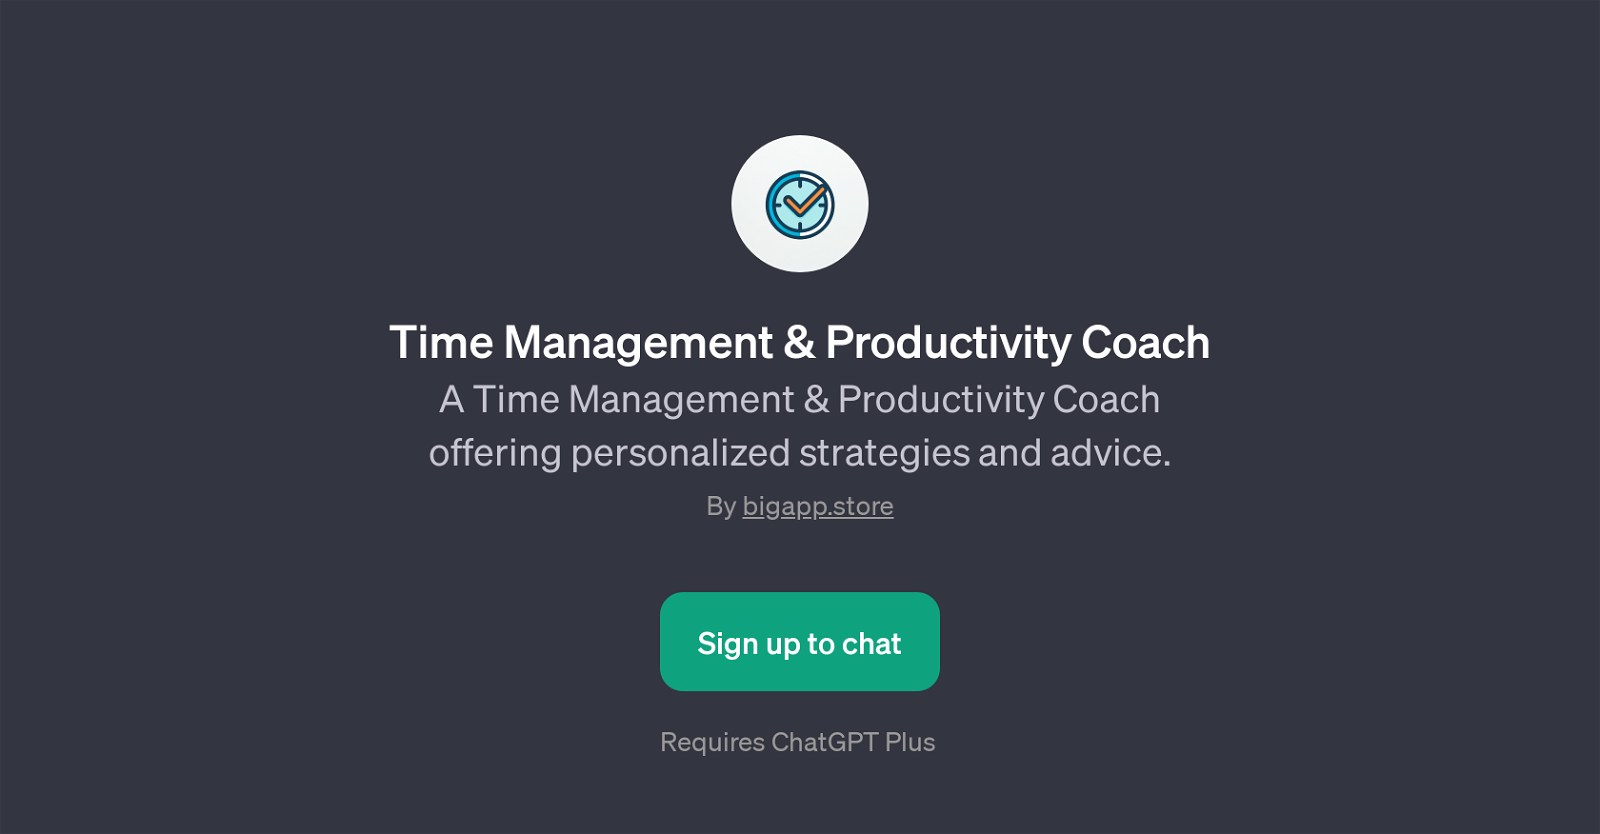 Time Management & Productivity Coach website